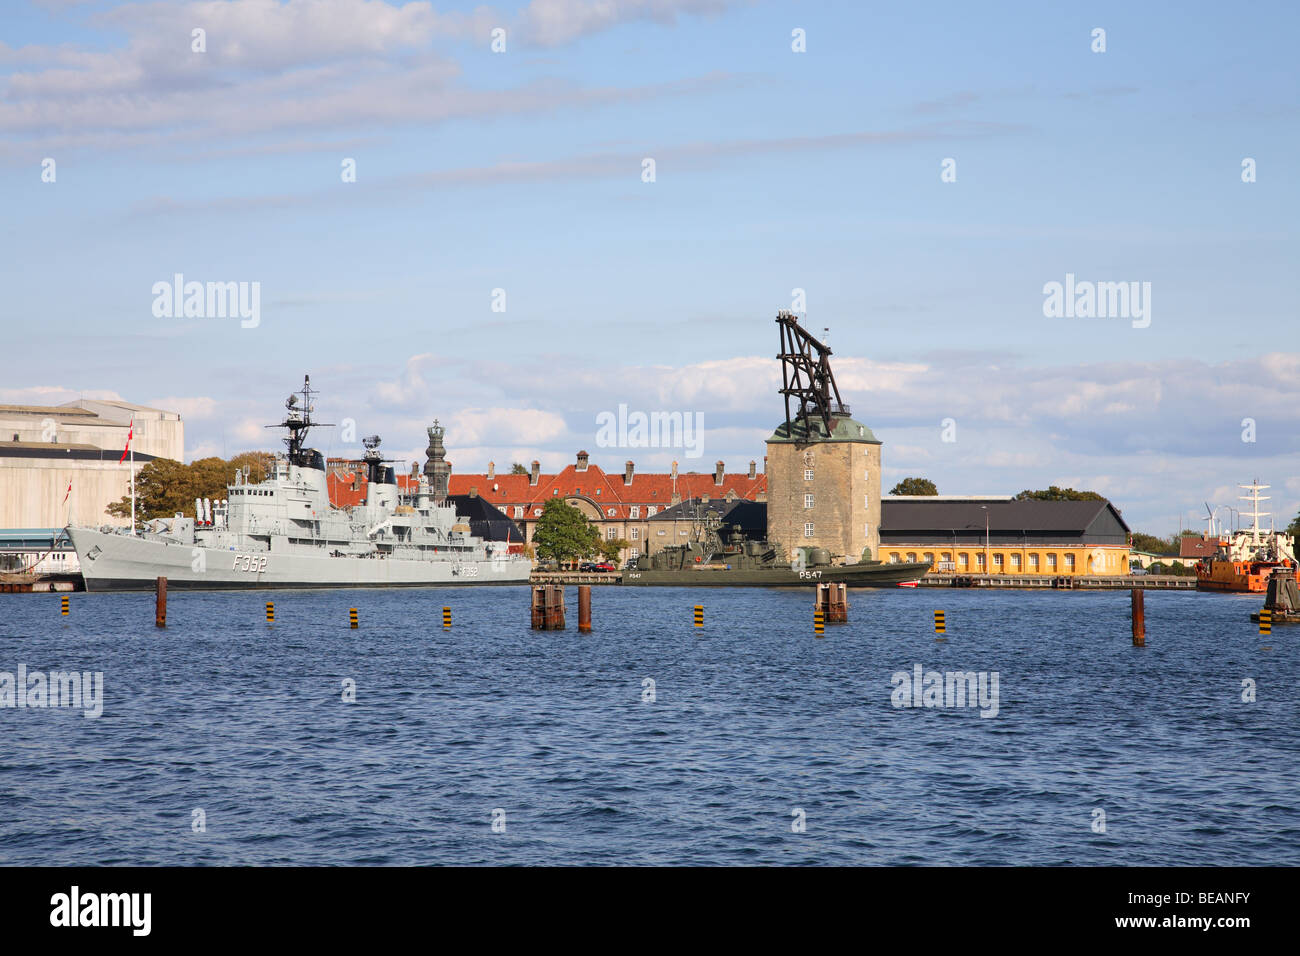 Ansicht des Hafens von Kopenhagen gegenüber den alten Marinestation Holmen mit historischen rigging Gardinen (Mast Kran) von ca. 1750. Stockfoto